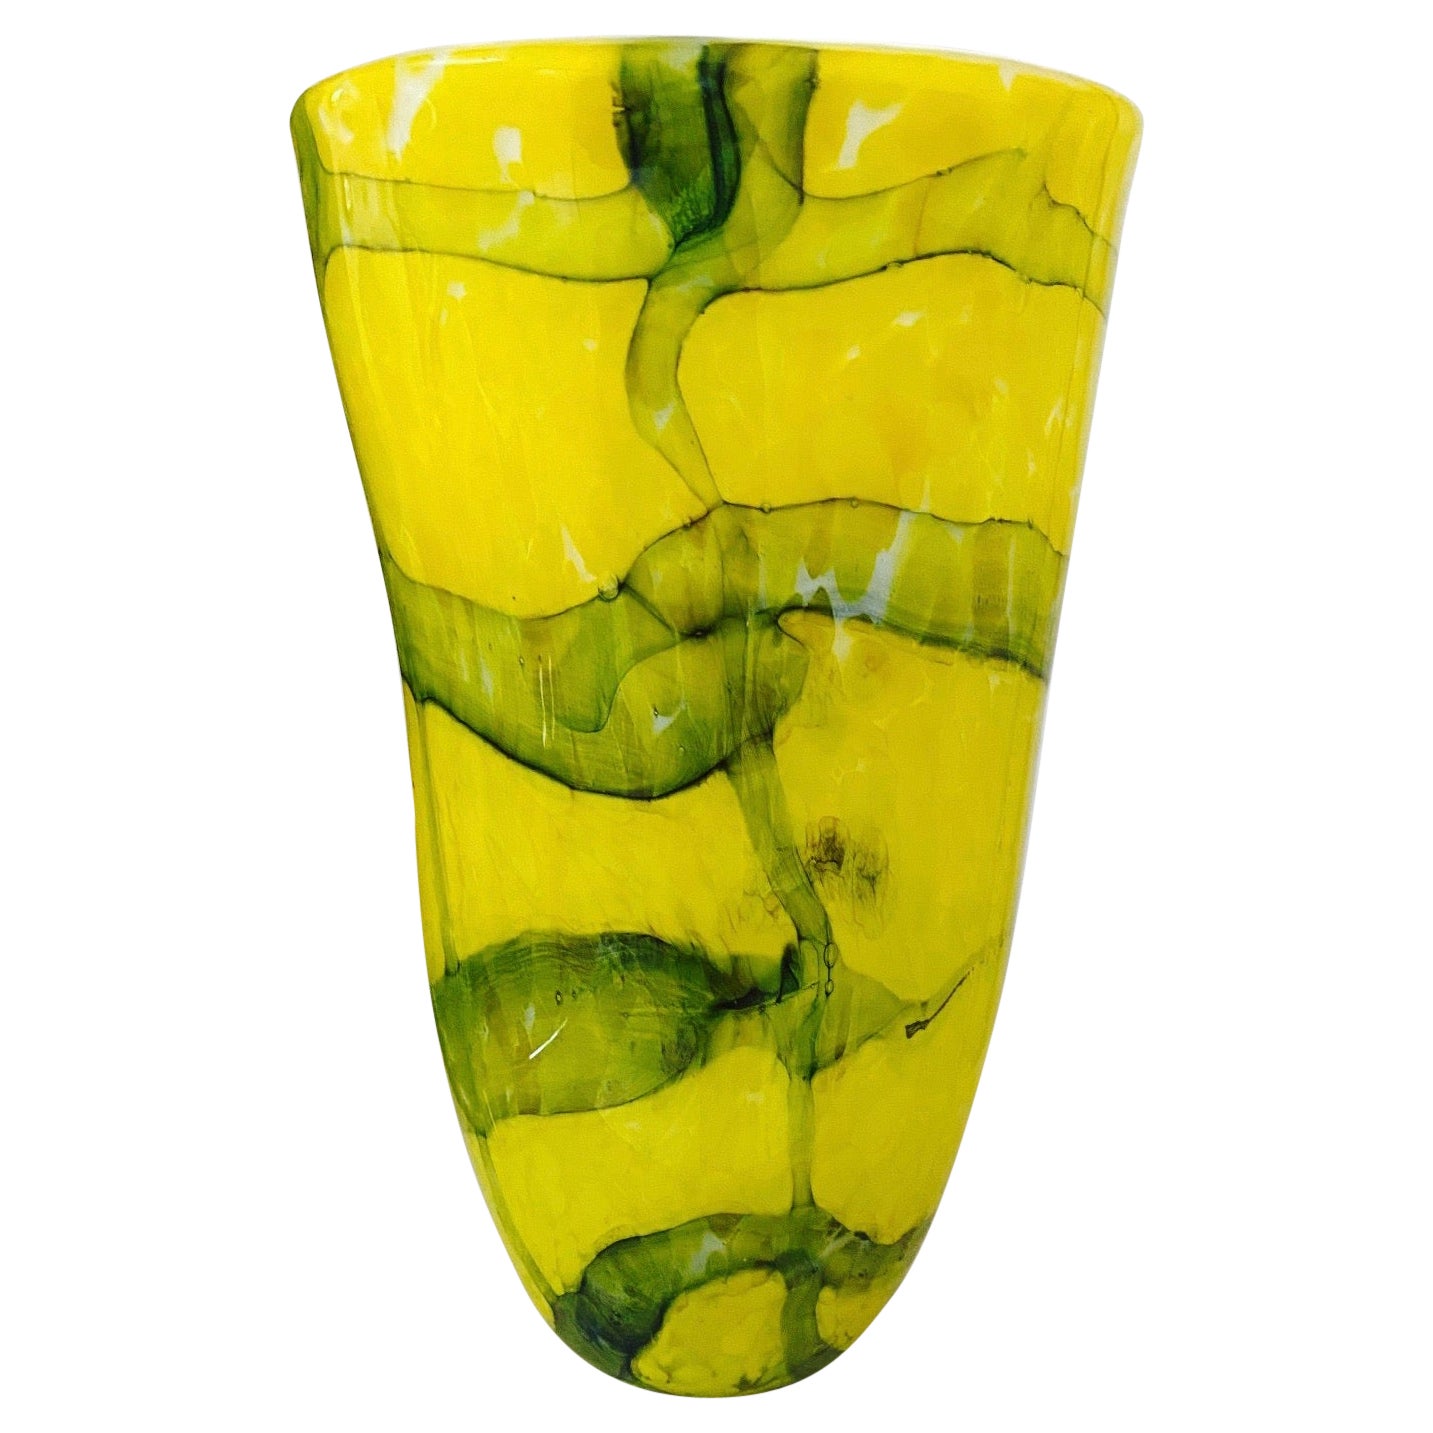 Vase abstrait en verre de Murano de Fratelli Toso en jaune et vert, vers 1980